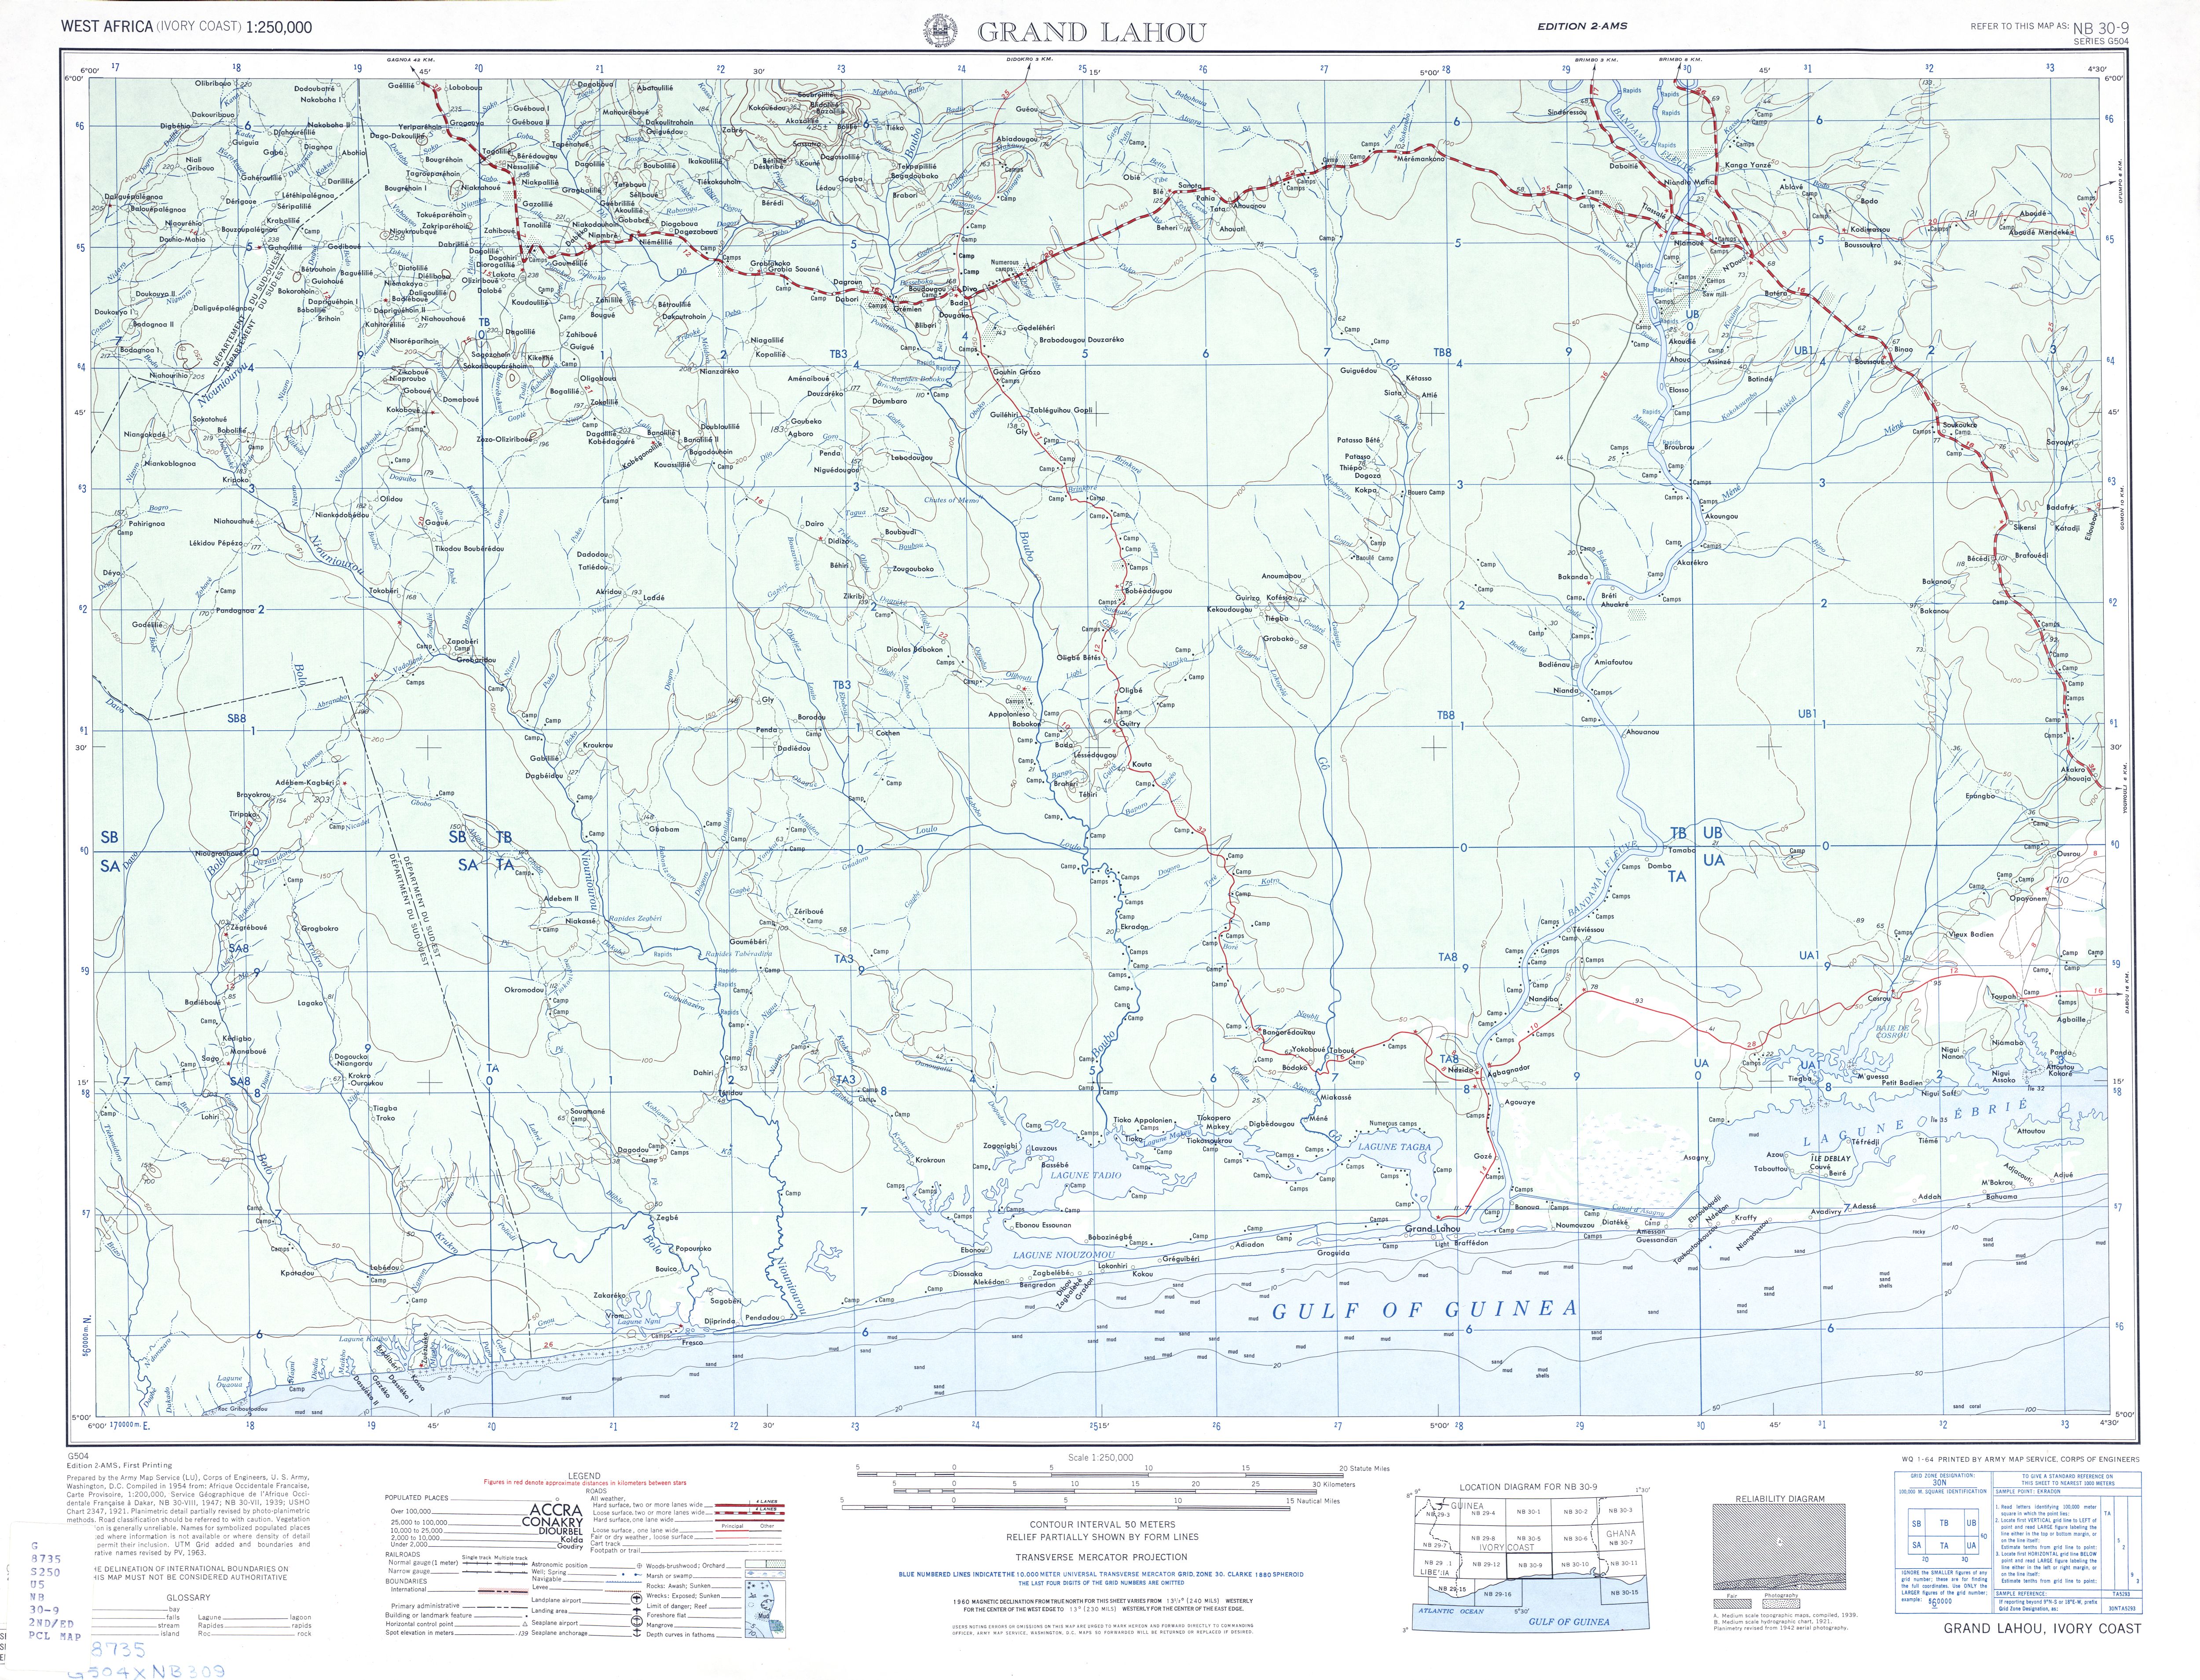 Hoja Grand Lahou del Mapa Topográfico de África Occidental 1955